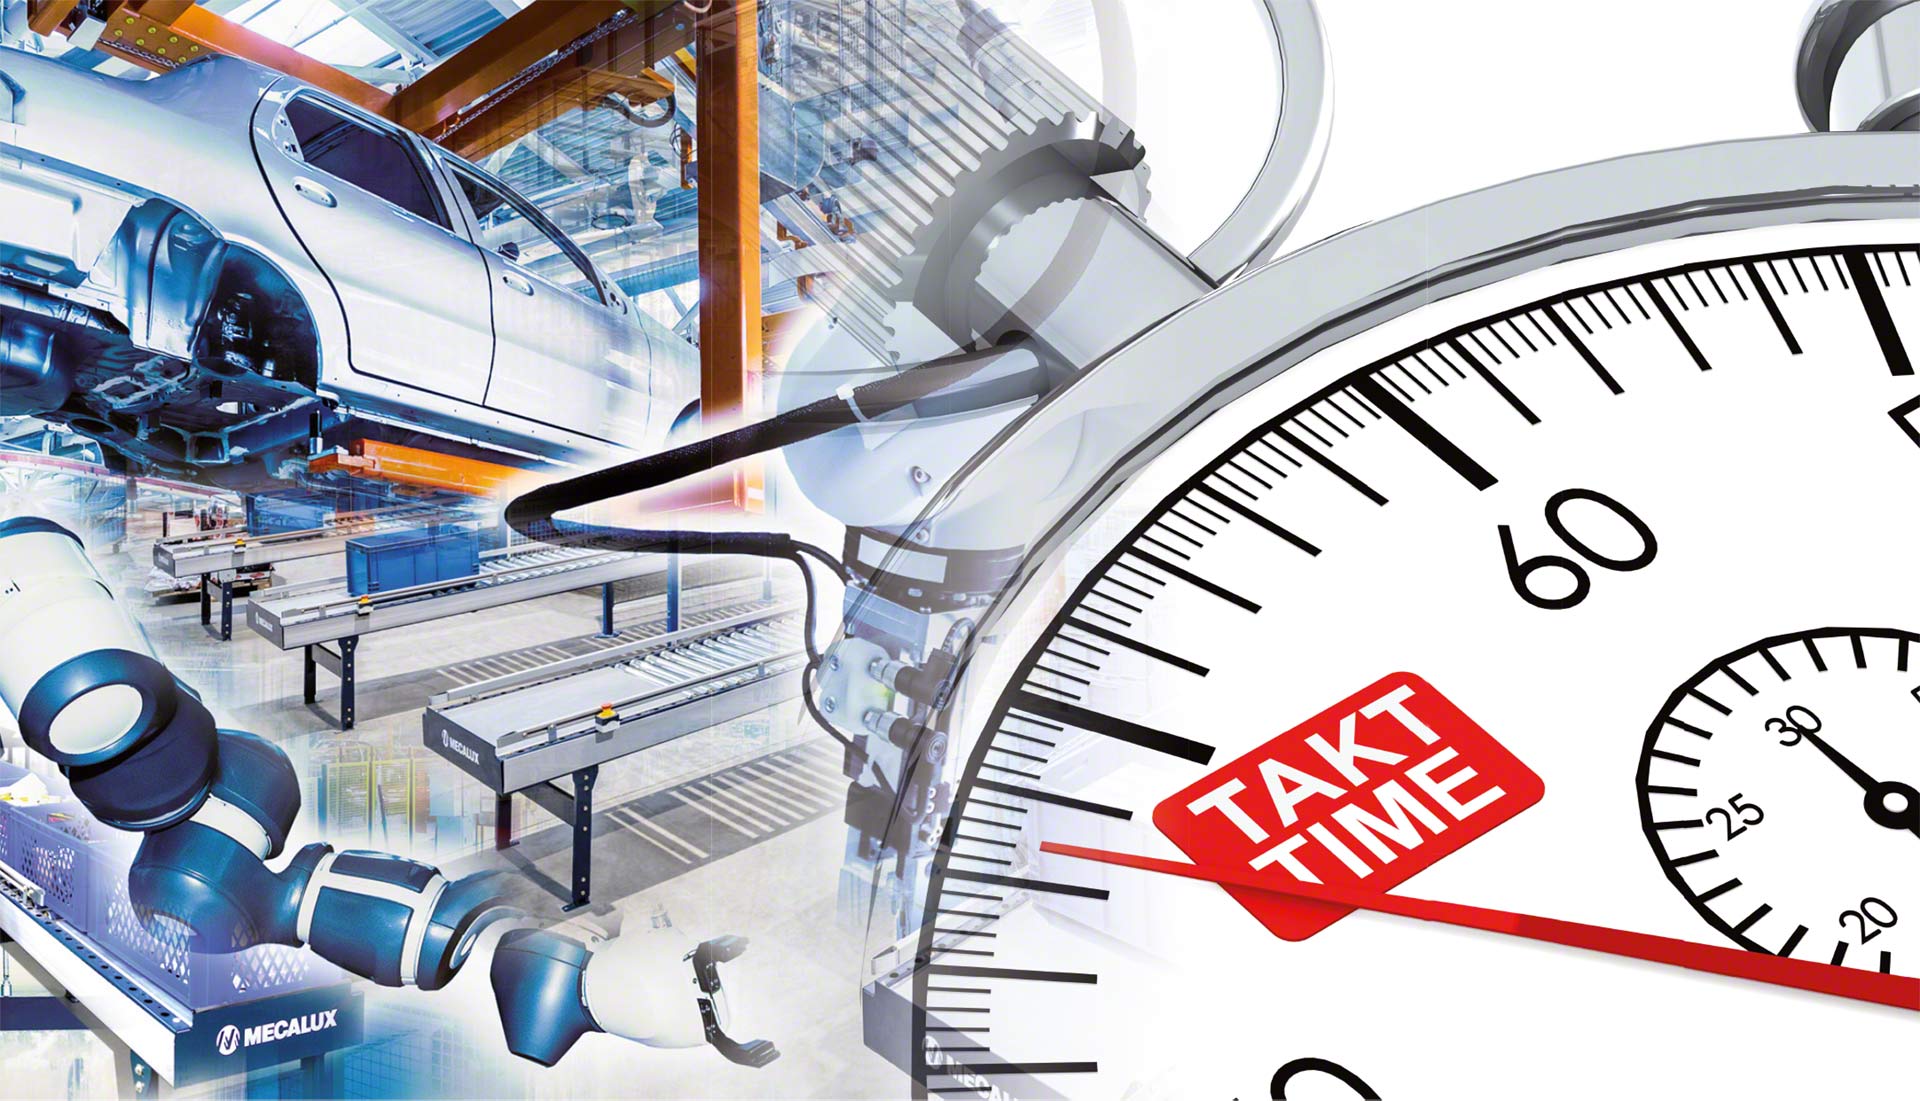 O Takt Time calcula o tempo que deve ser destinado à fabricação de um produto para satisfazer a demanda